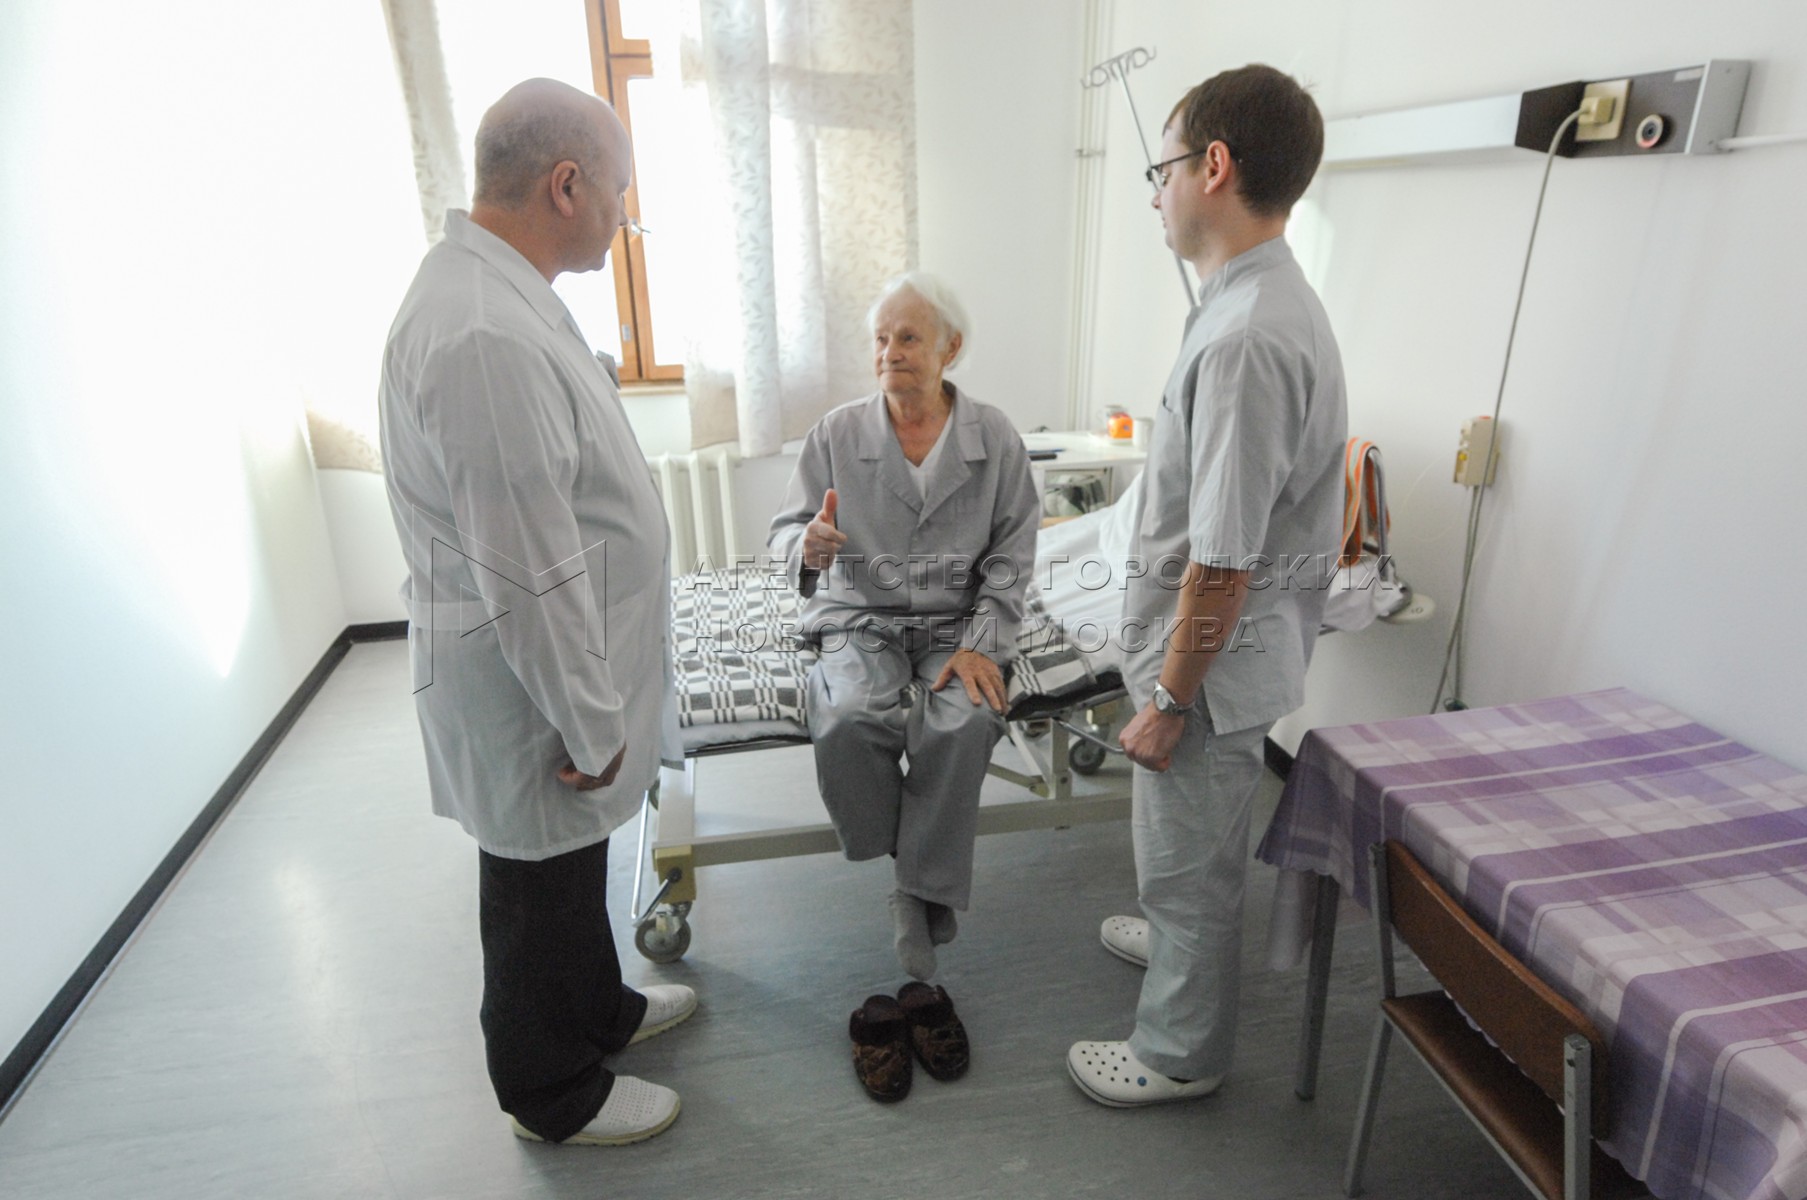 Госпиталь 3 врачи. Госпиталь ветеранов войн Медведково. Госпиталь ветеранов войн 2 пациенты. Помощь пациенту.